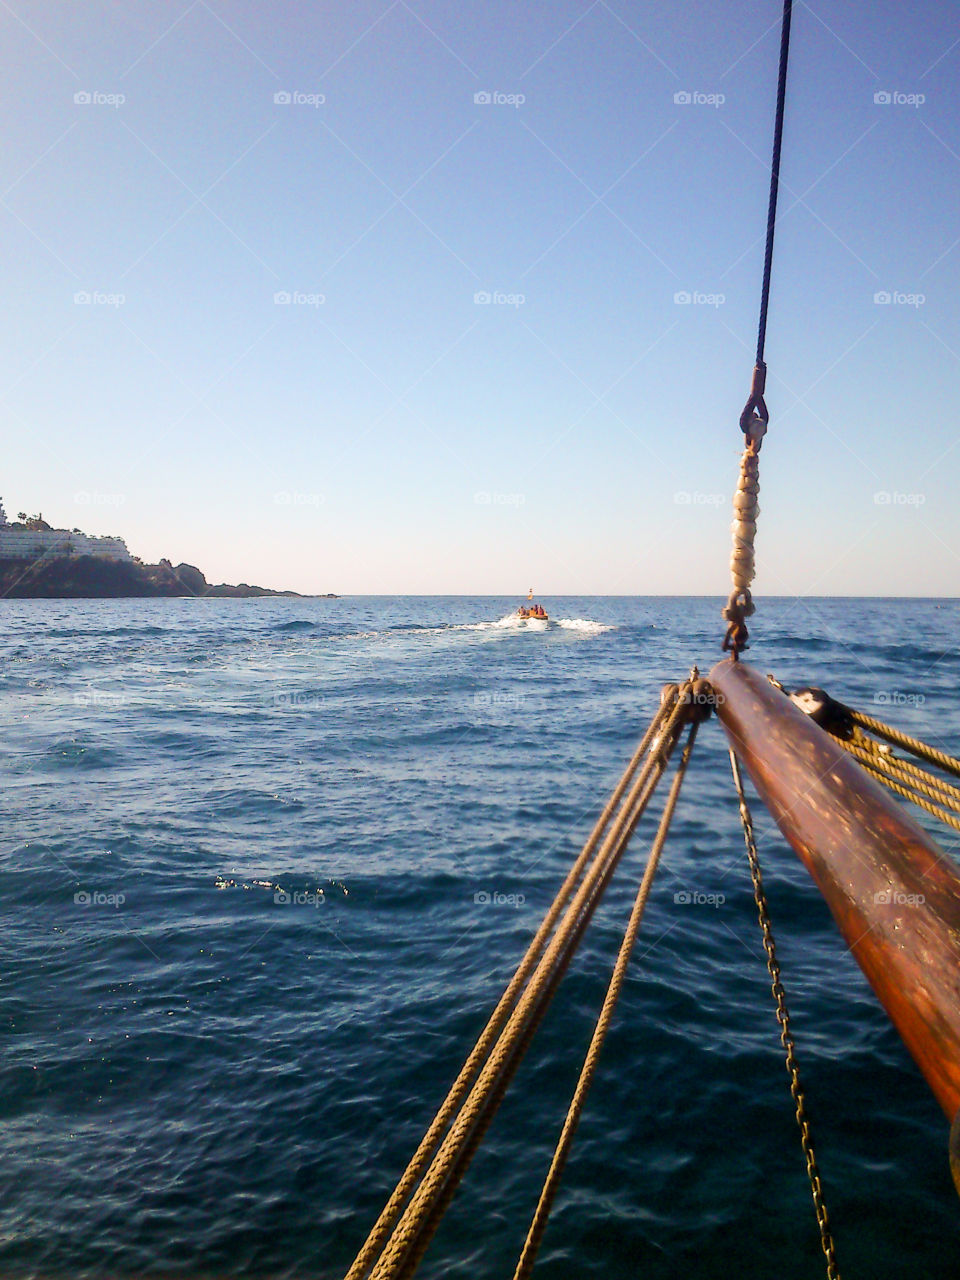 Sailing from El Barranco de la Masca